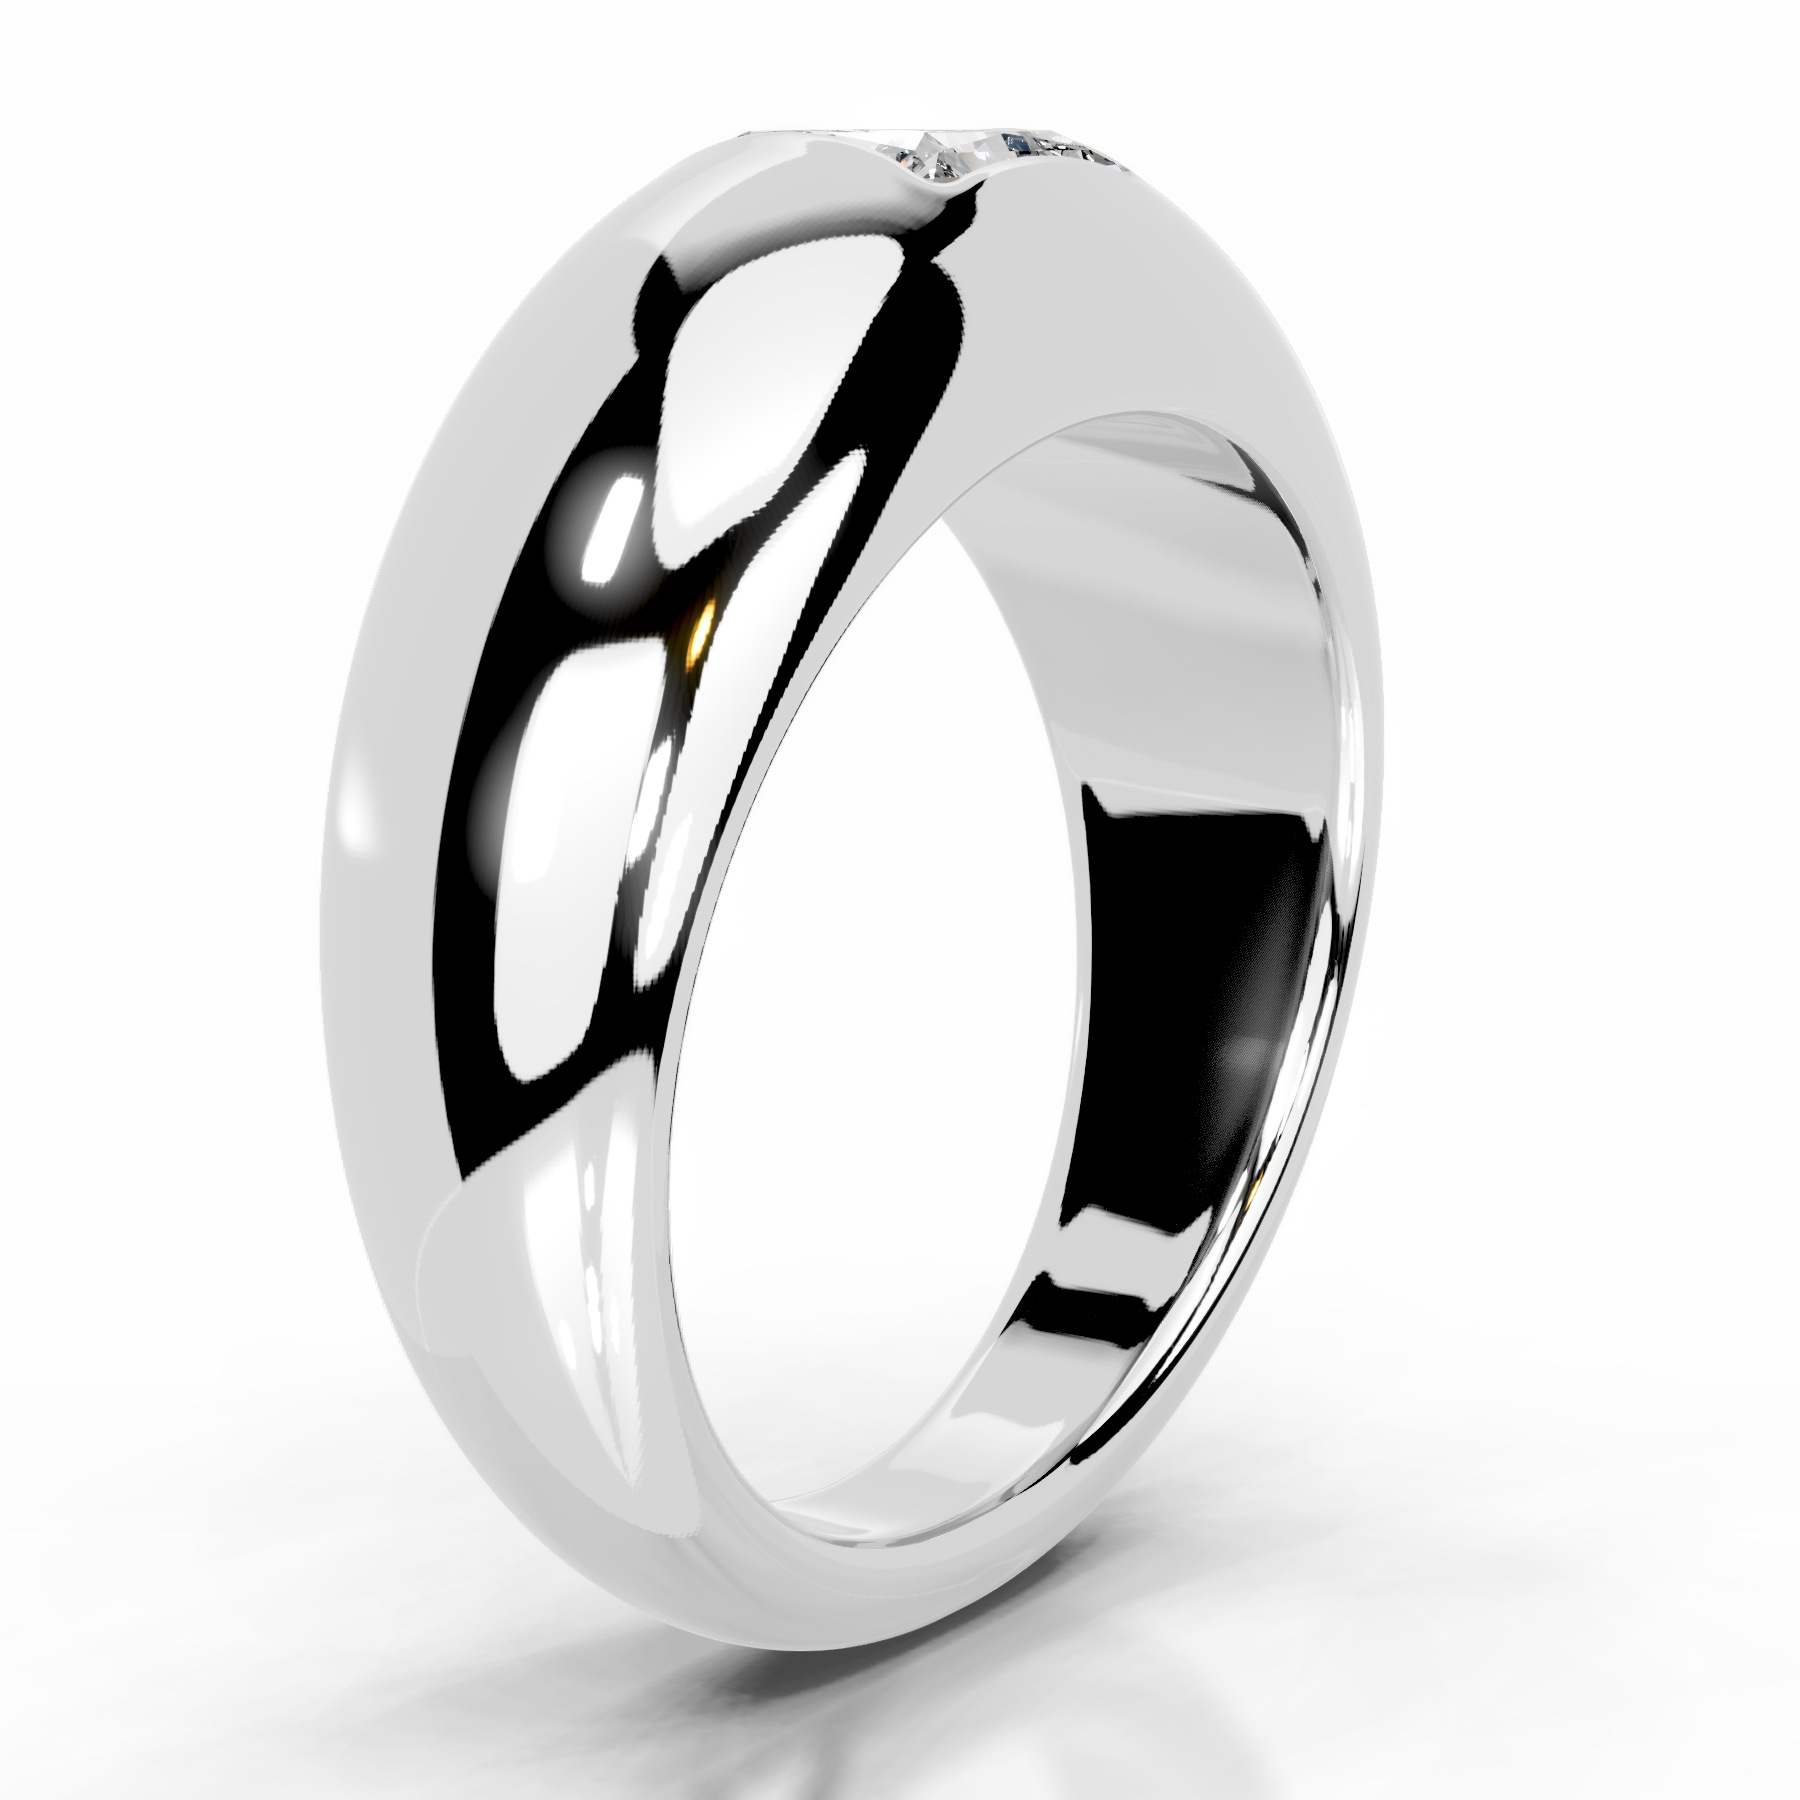 Aaliyah Diamond Engagement Ring   (1 Carat) -Platinum